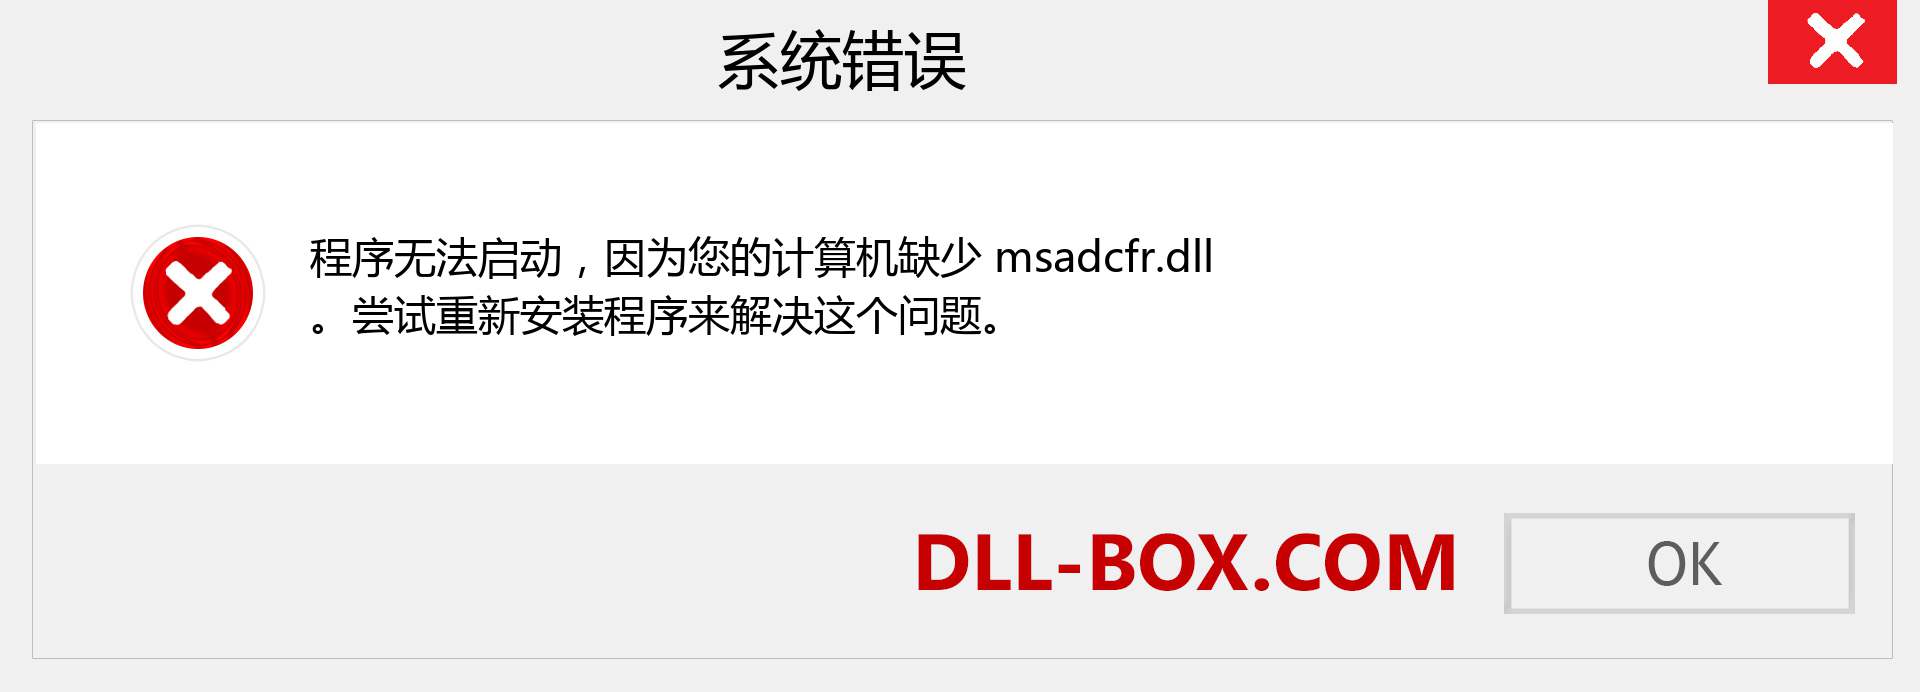 msadcfr.dll 文件丢失？。 适用于 Windows 7、8、10 的下载 - 修复 Windows、照片、图像上的 msadcfr dll 丢失错误